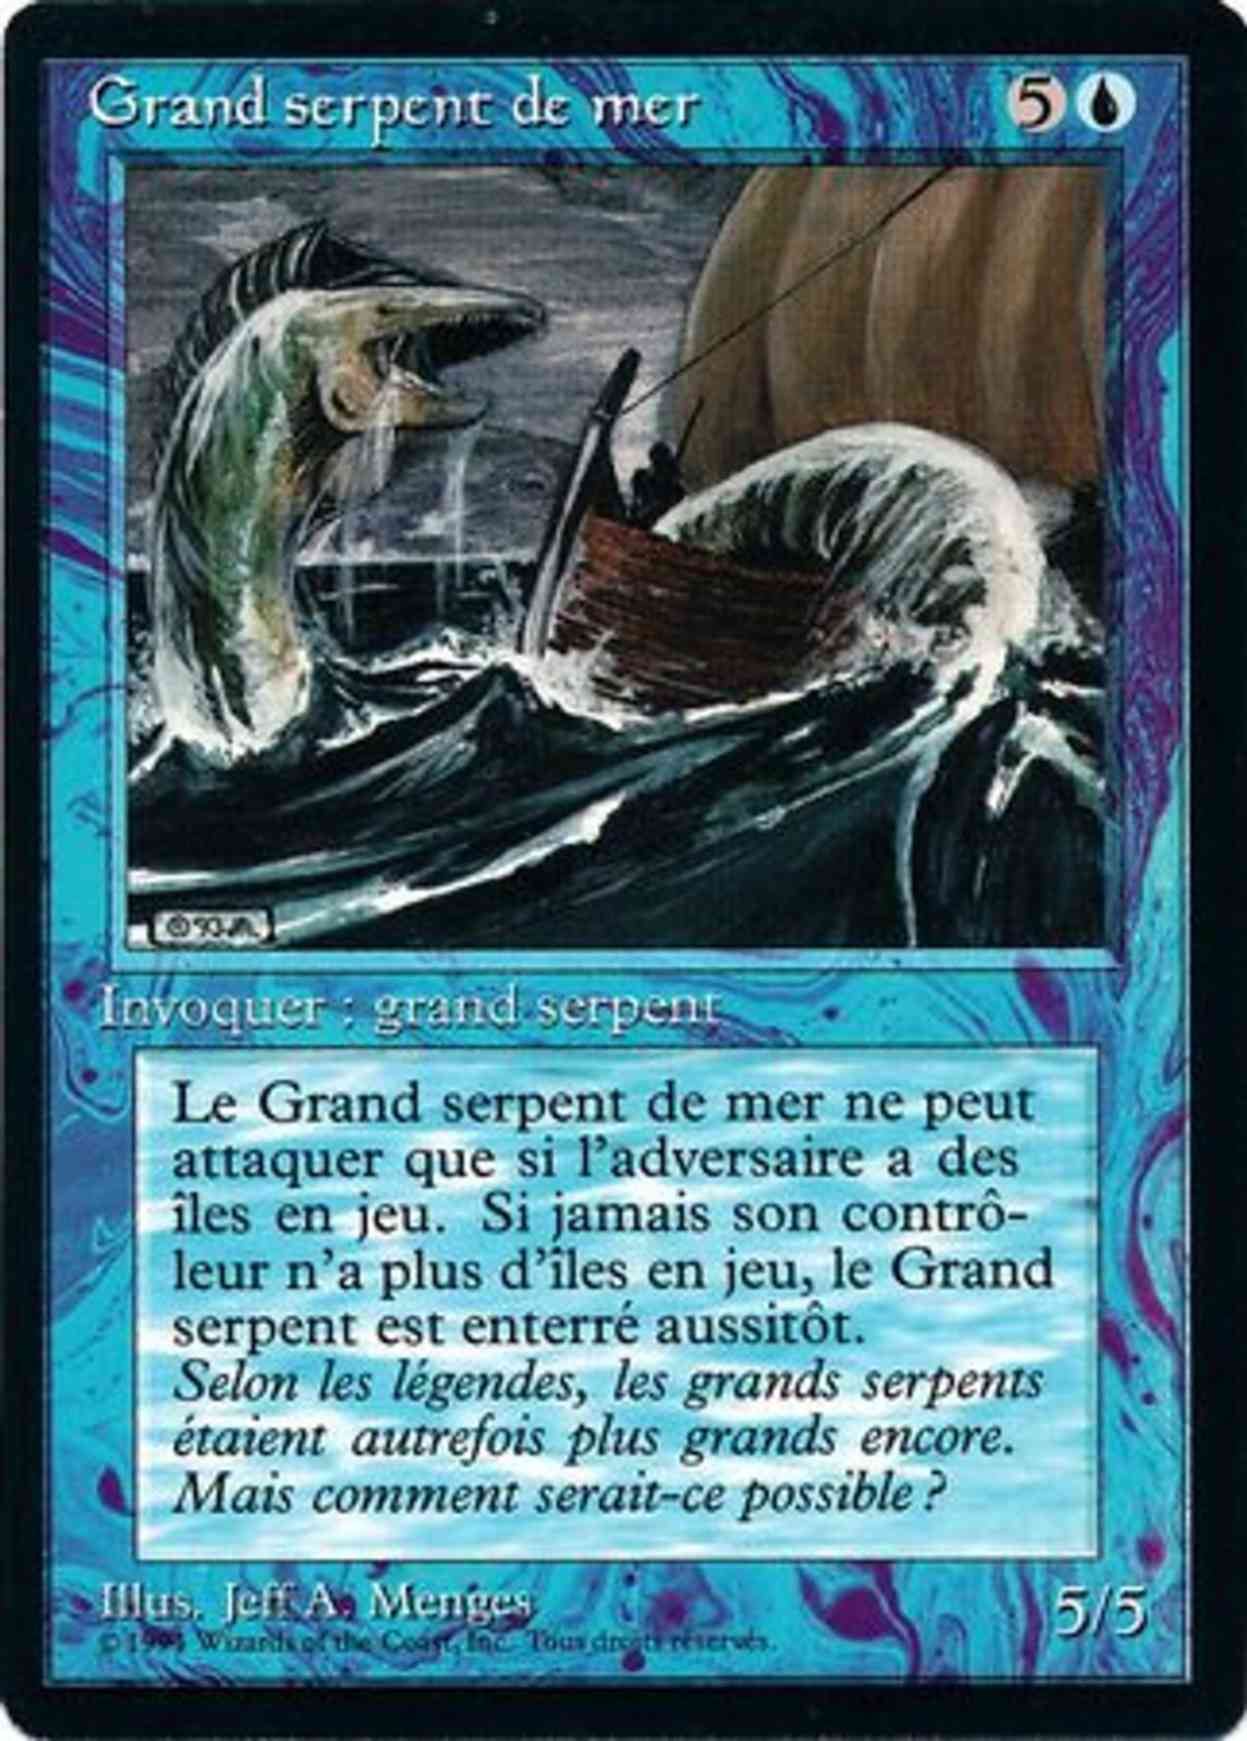 Sea Serpent magic card front